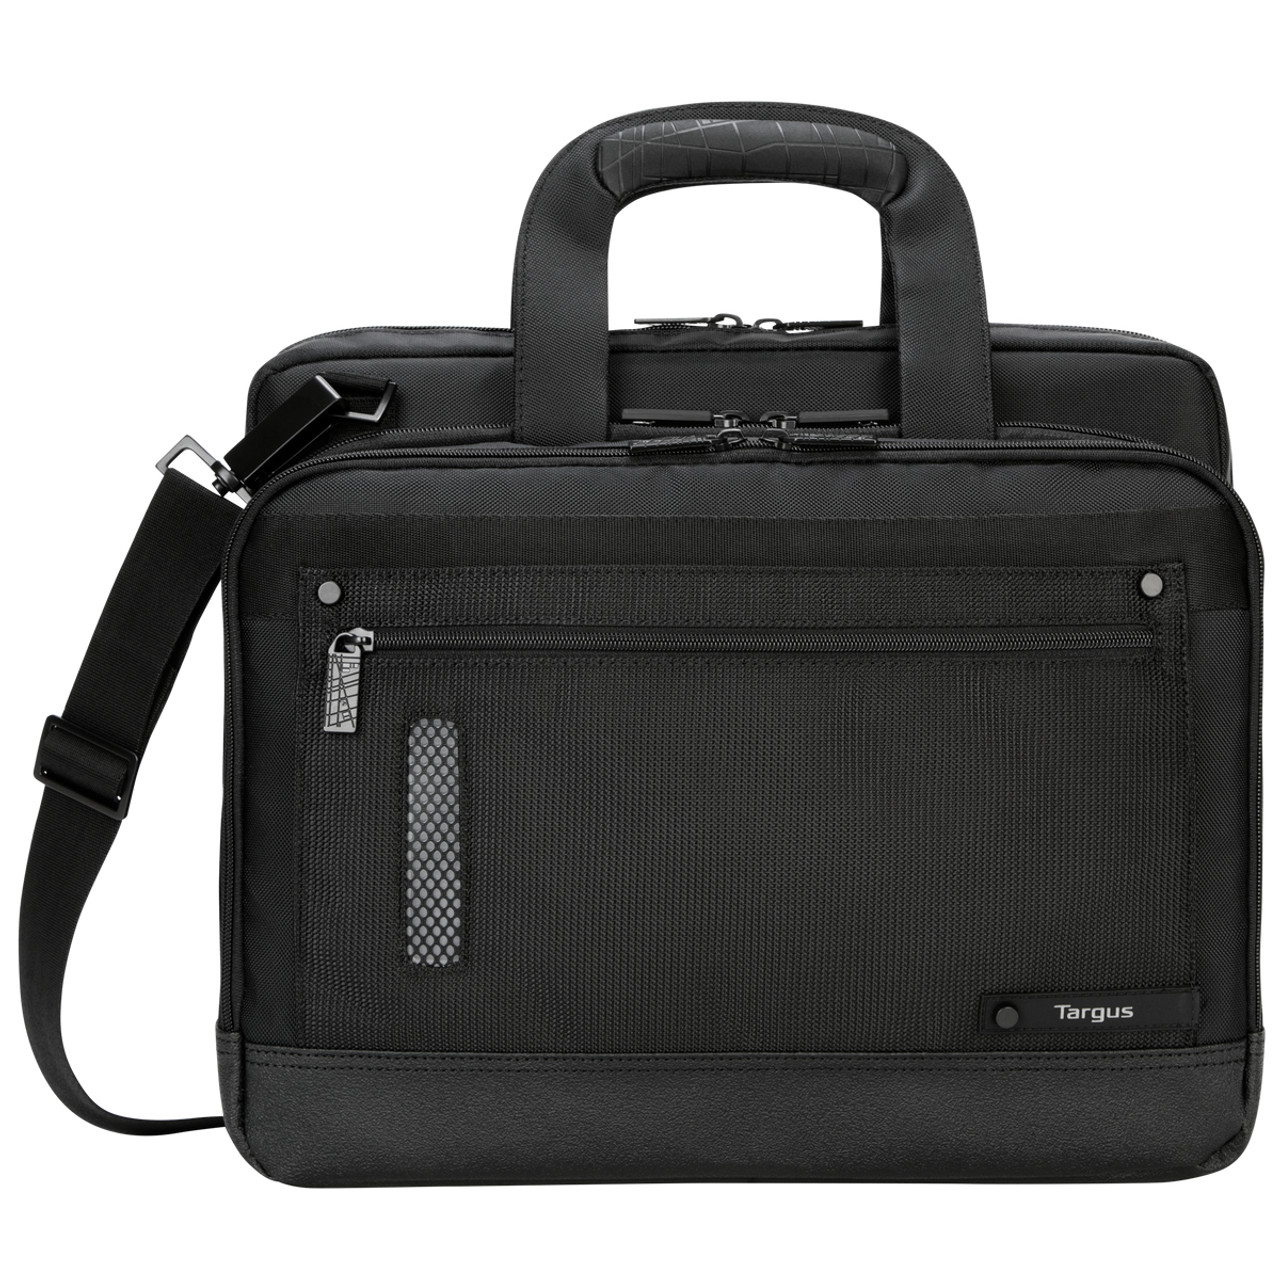 Targus TTL224 14" Briefcase Black,Grey notebook case